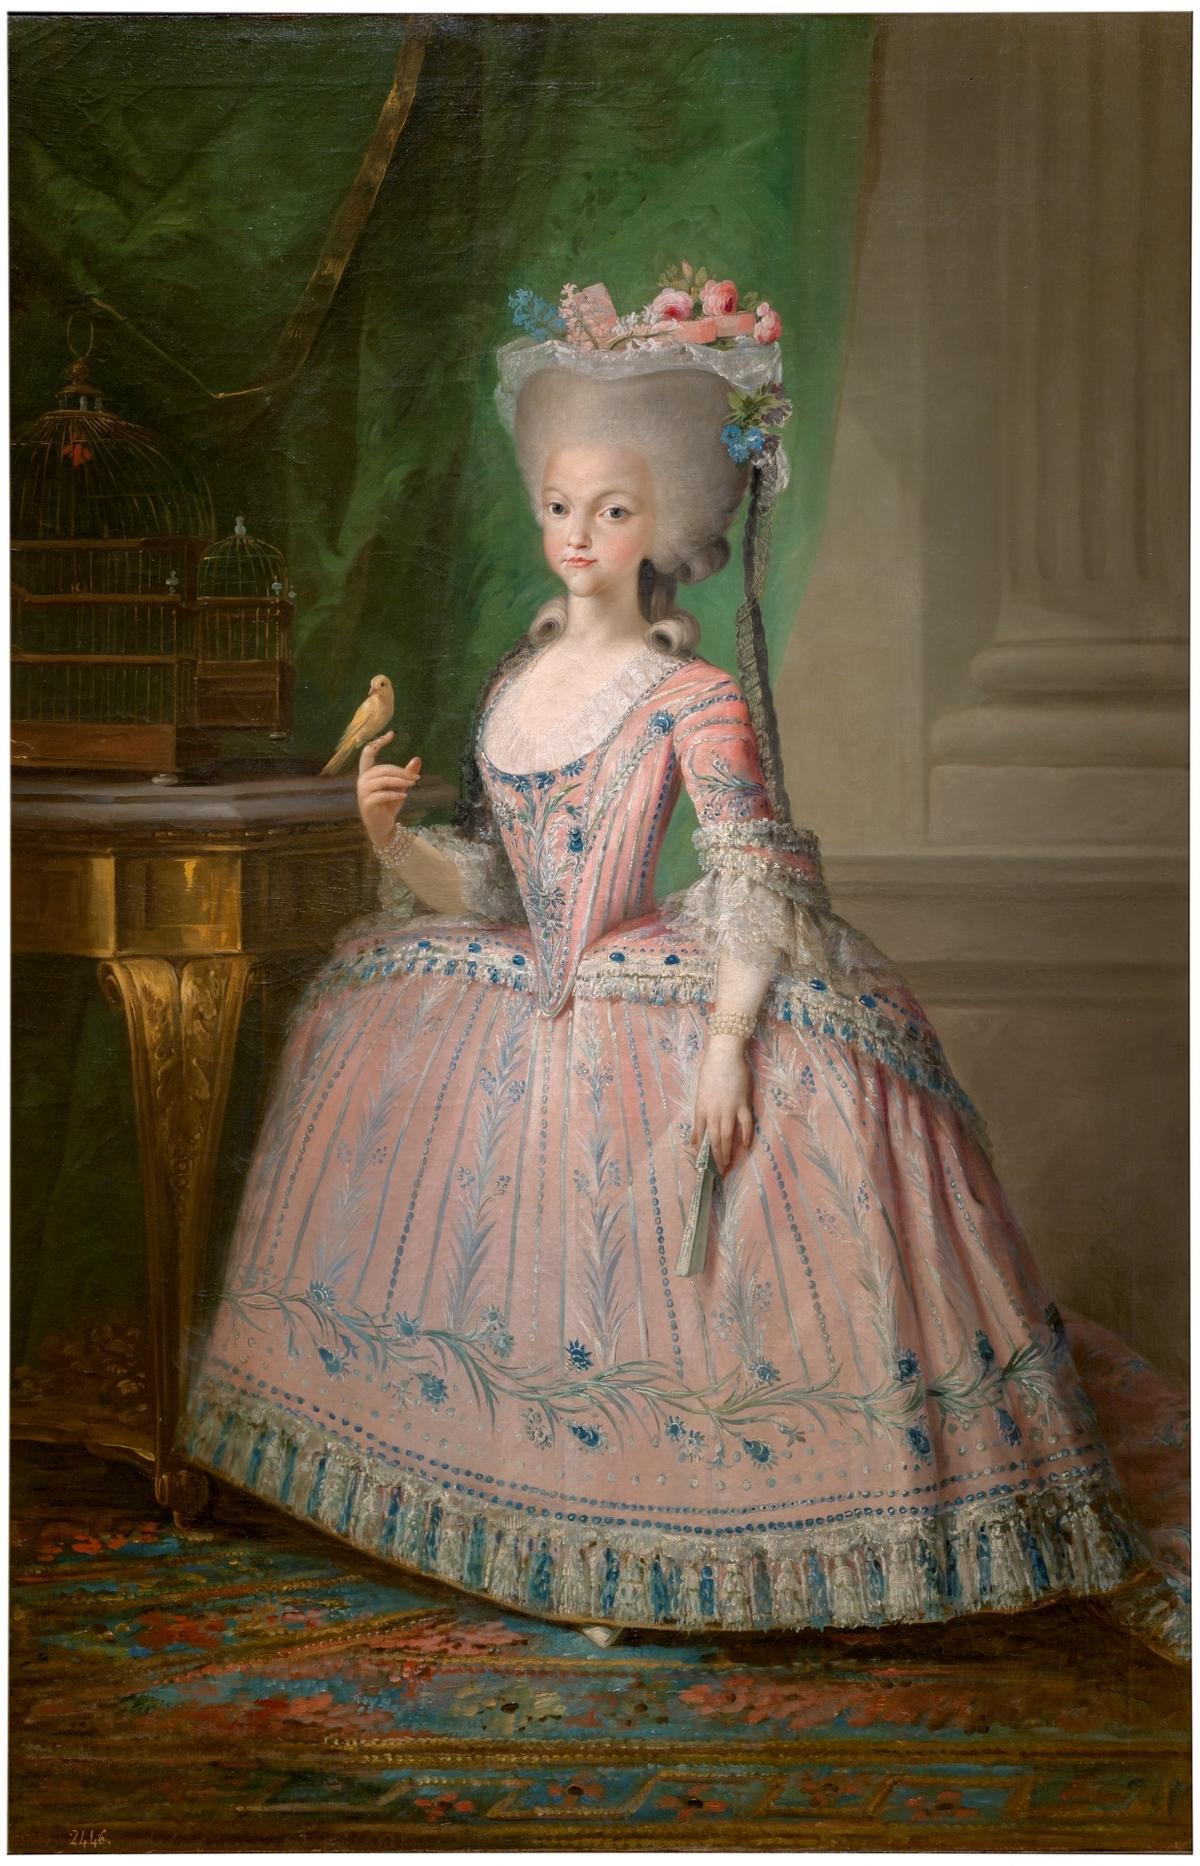 La infanta Carlota Joaquina retratada por Maella.